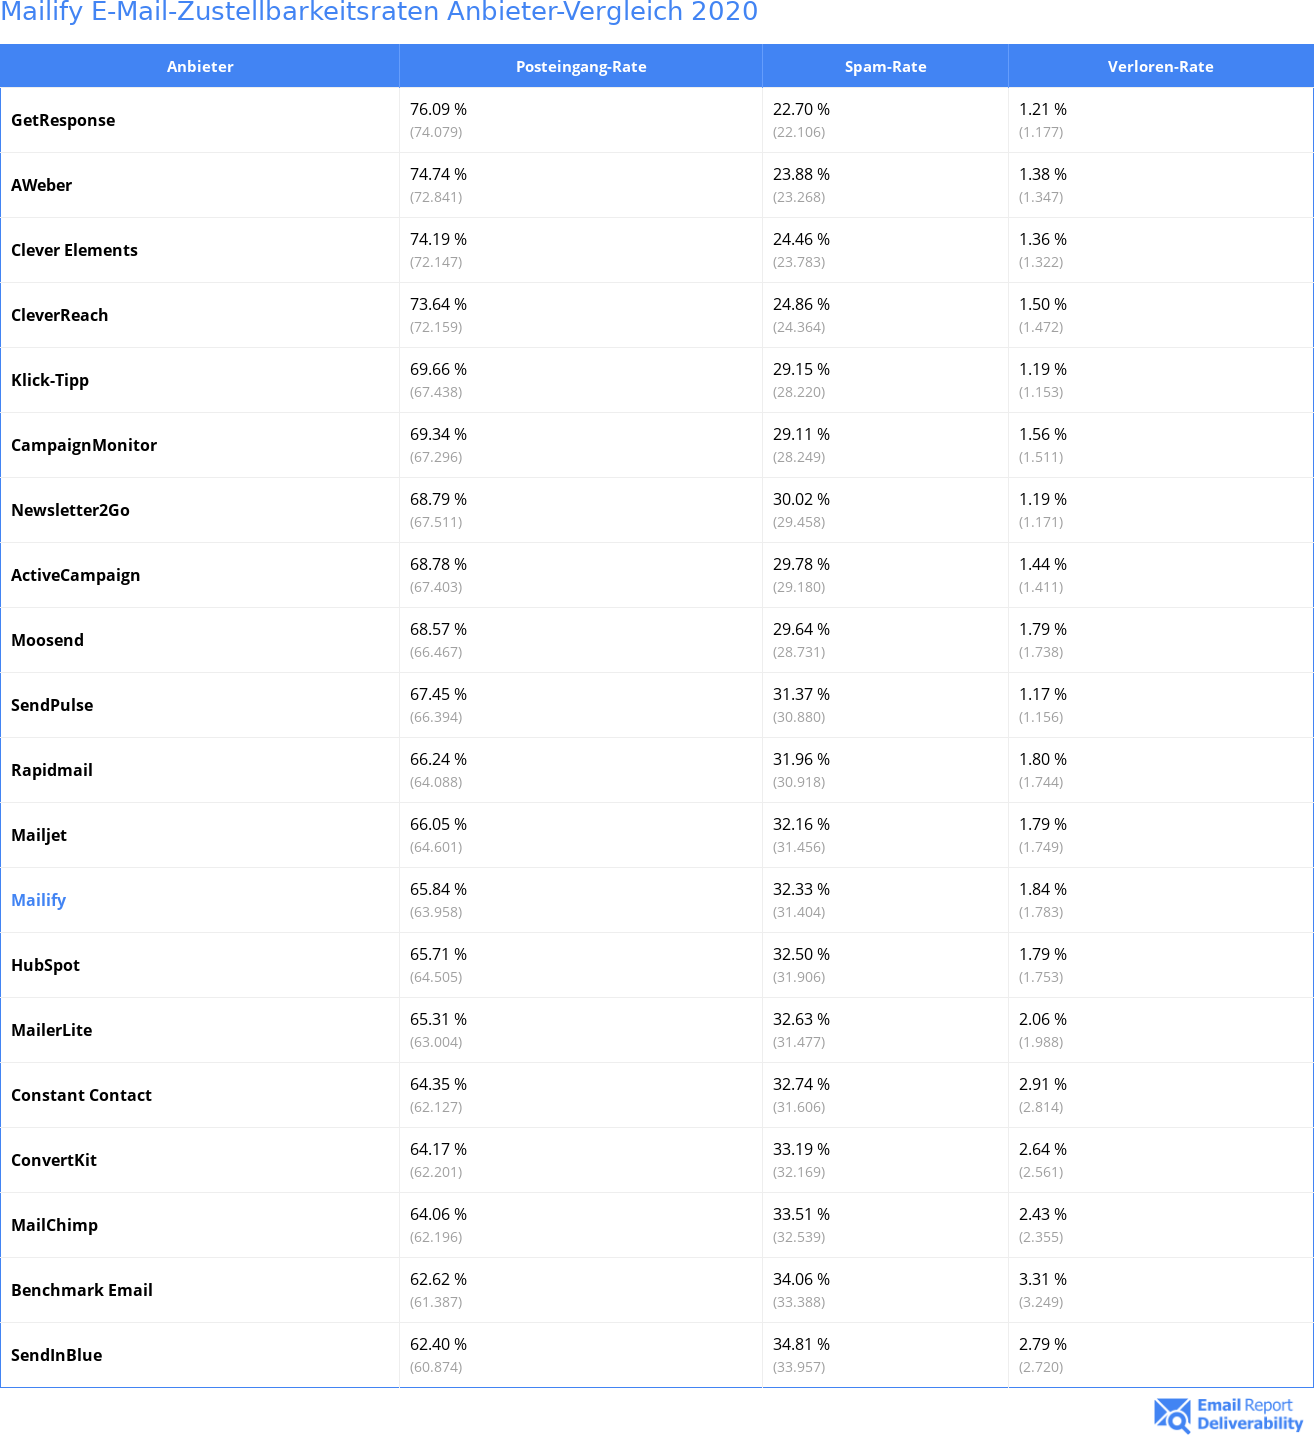 Mailify E-Mail-Zustellbarkeitsraten Anbieter-Vergleich 2020